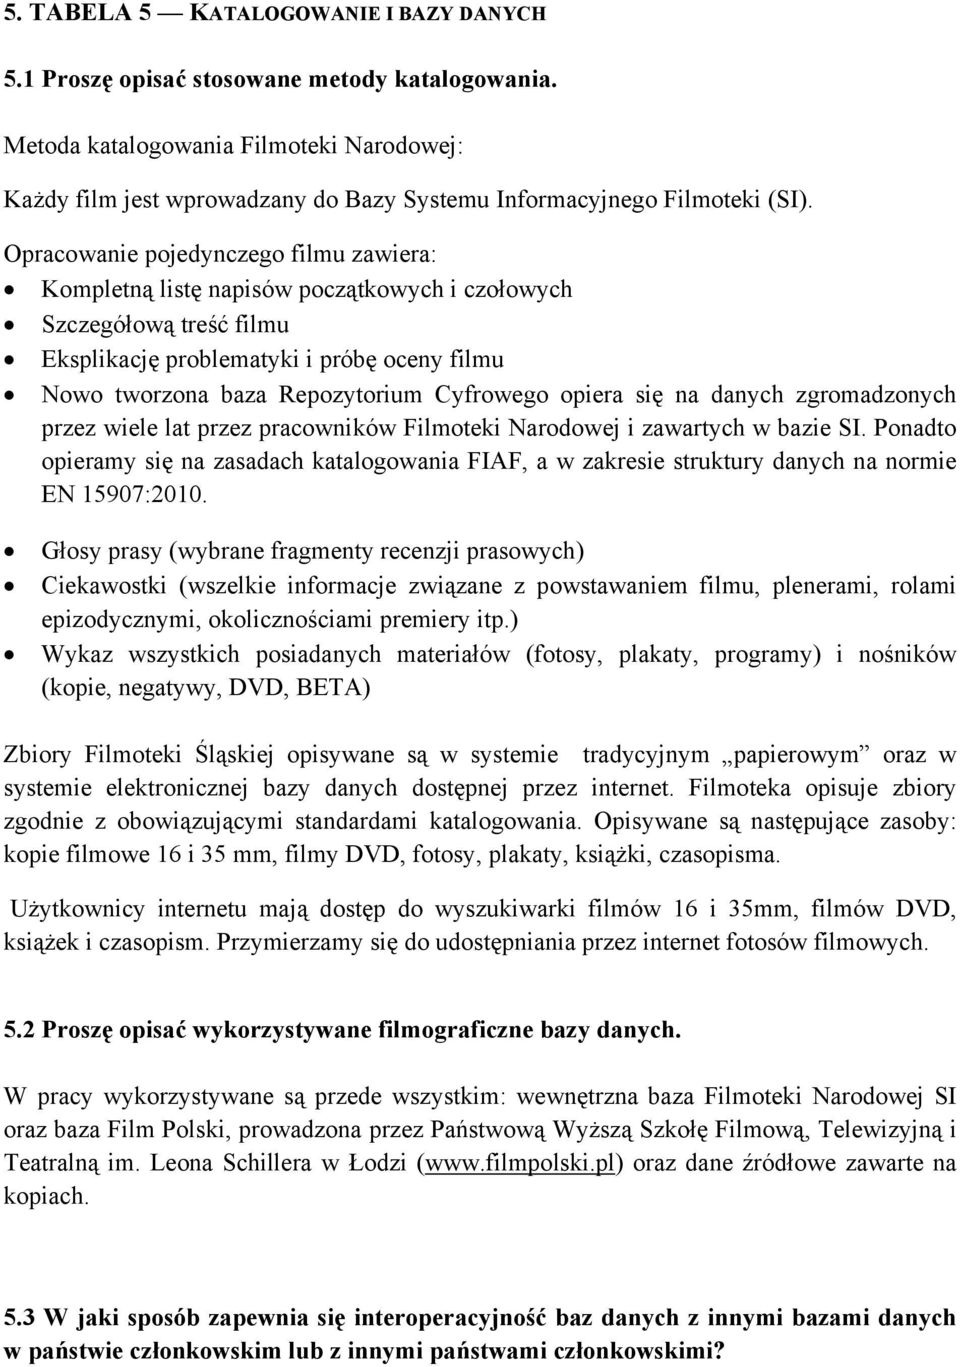 Opracowanie pojedynczego filmu zawiera: Kompletną listę napisów początkowych i czołowych Szczegółową treść filmu Eksplikację problematyki i próbę oceny filmu Nowo tworzona baza Repozytorium Cyfrowego